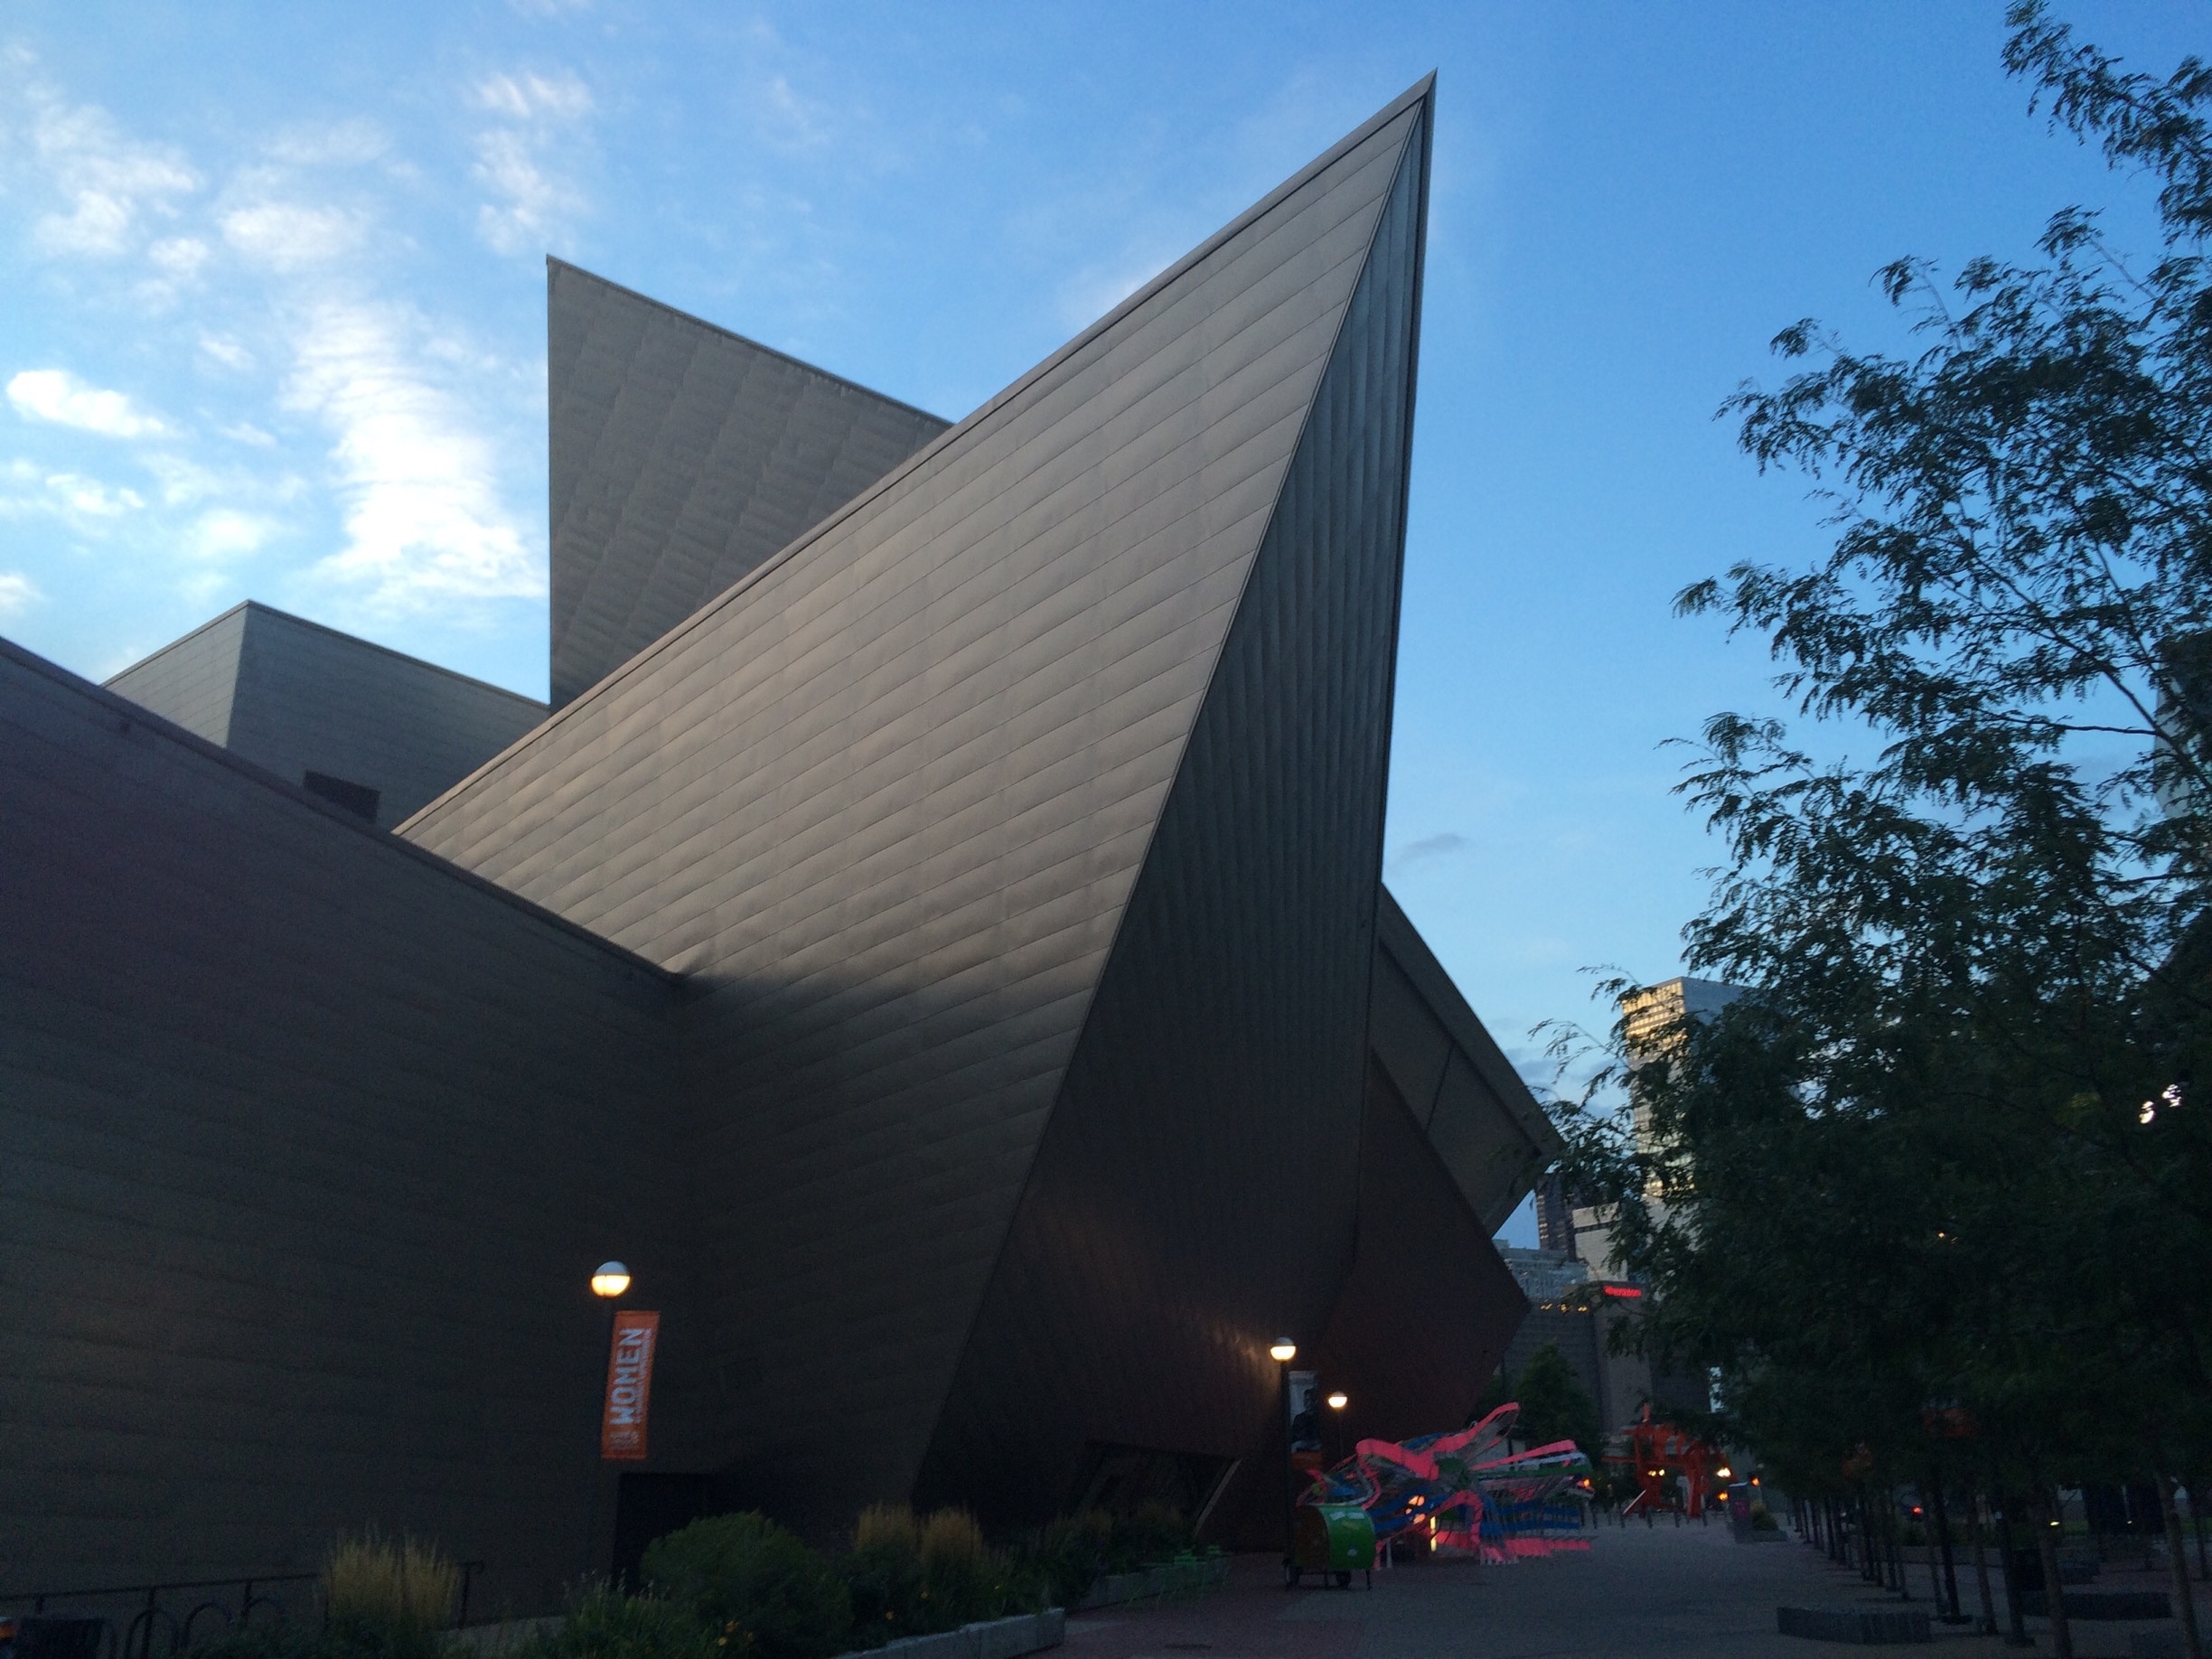 Denver Art Museum, Denver, Colorado, United States of America